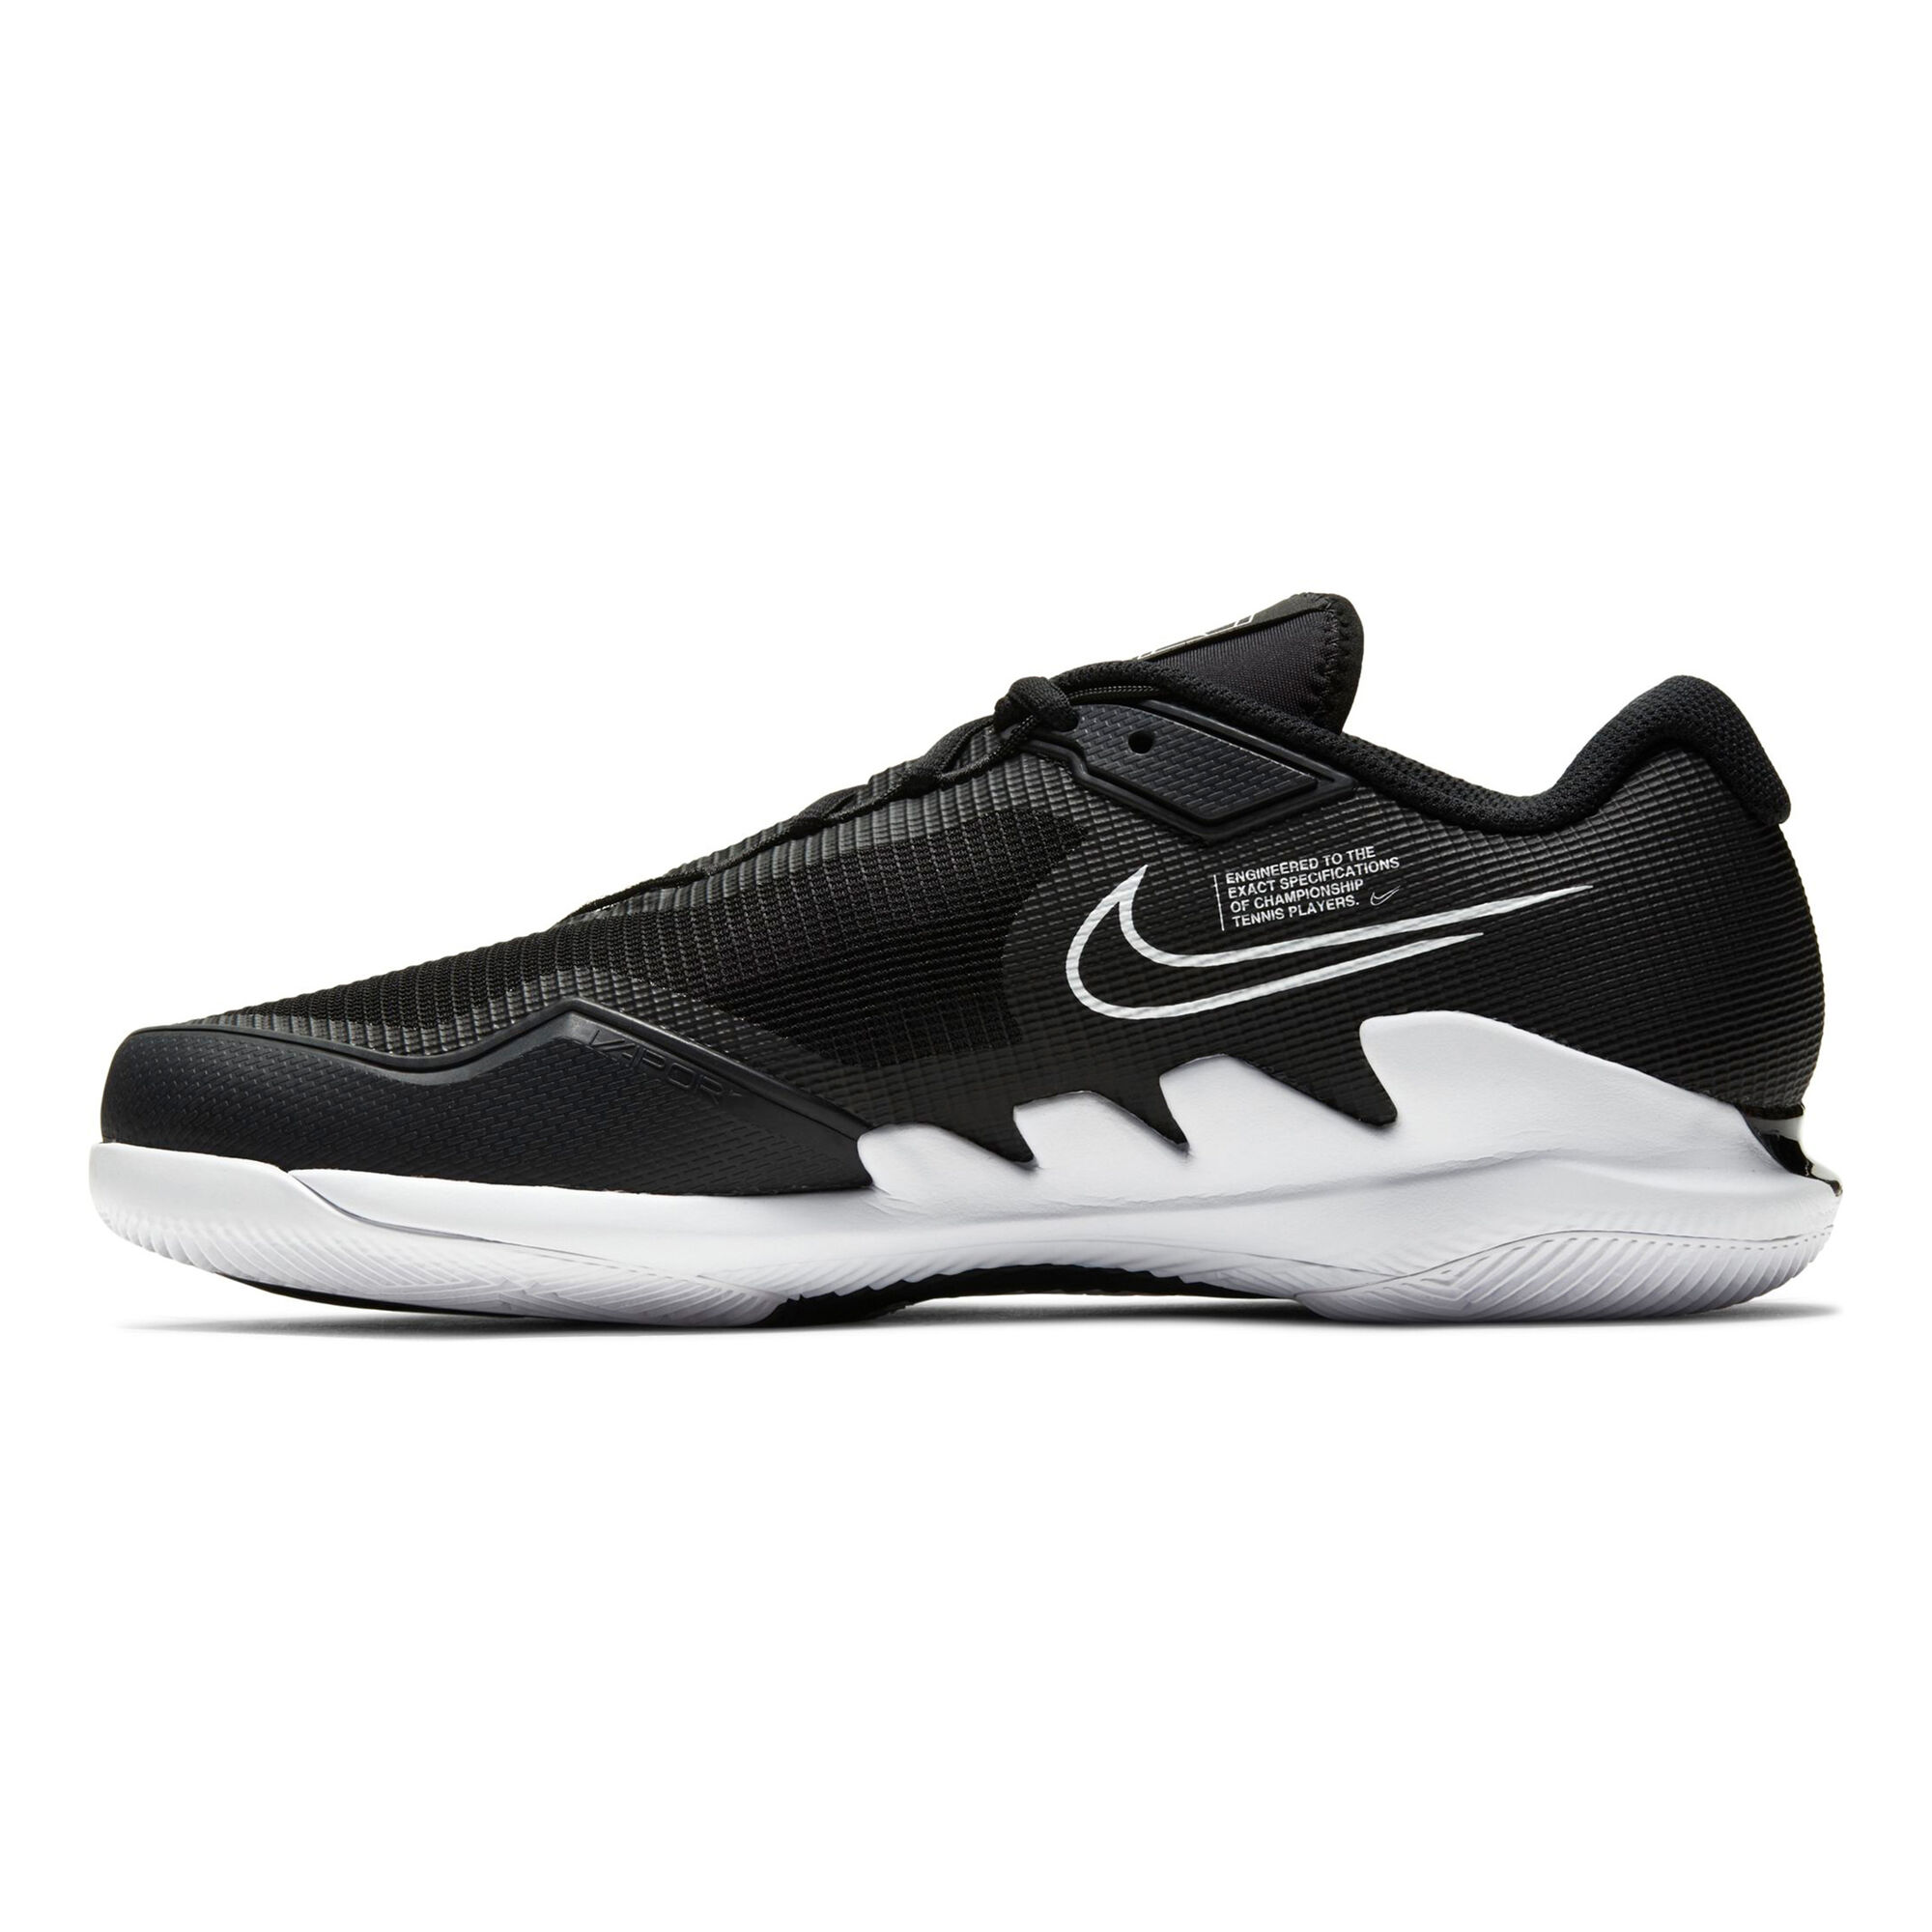 Buy Nike Air Zoom Vapor Pro All Court Shoe Men Black, White online ...